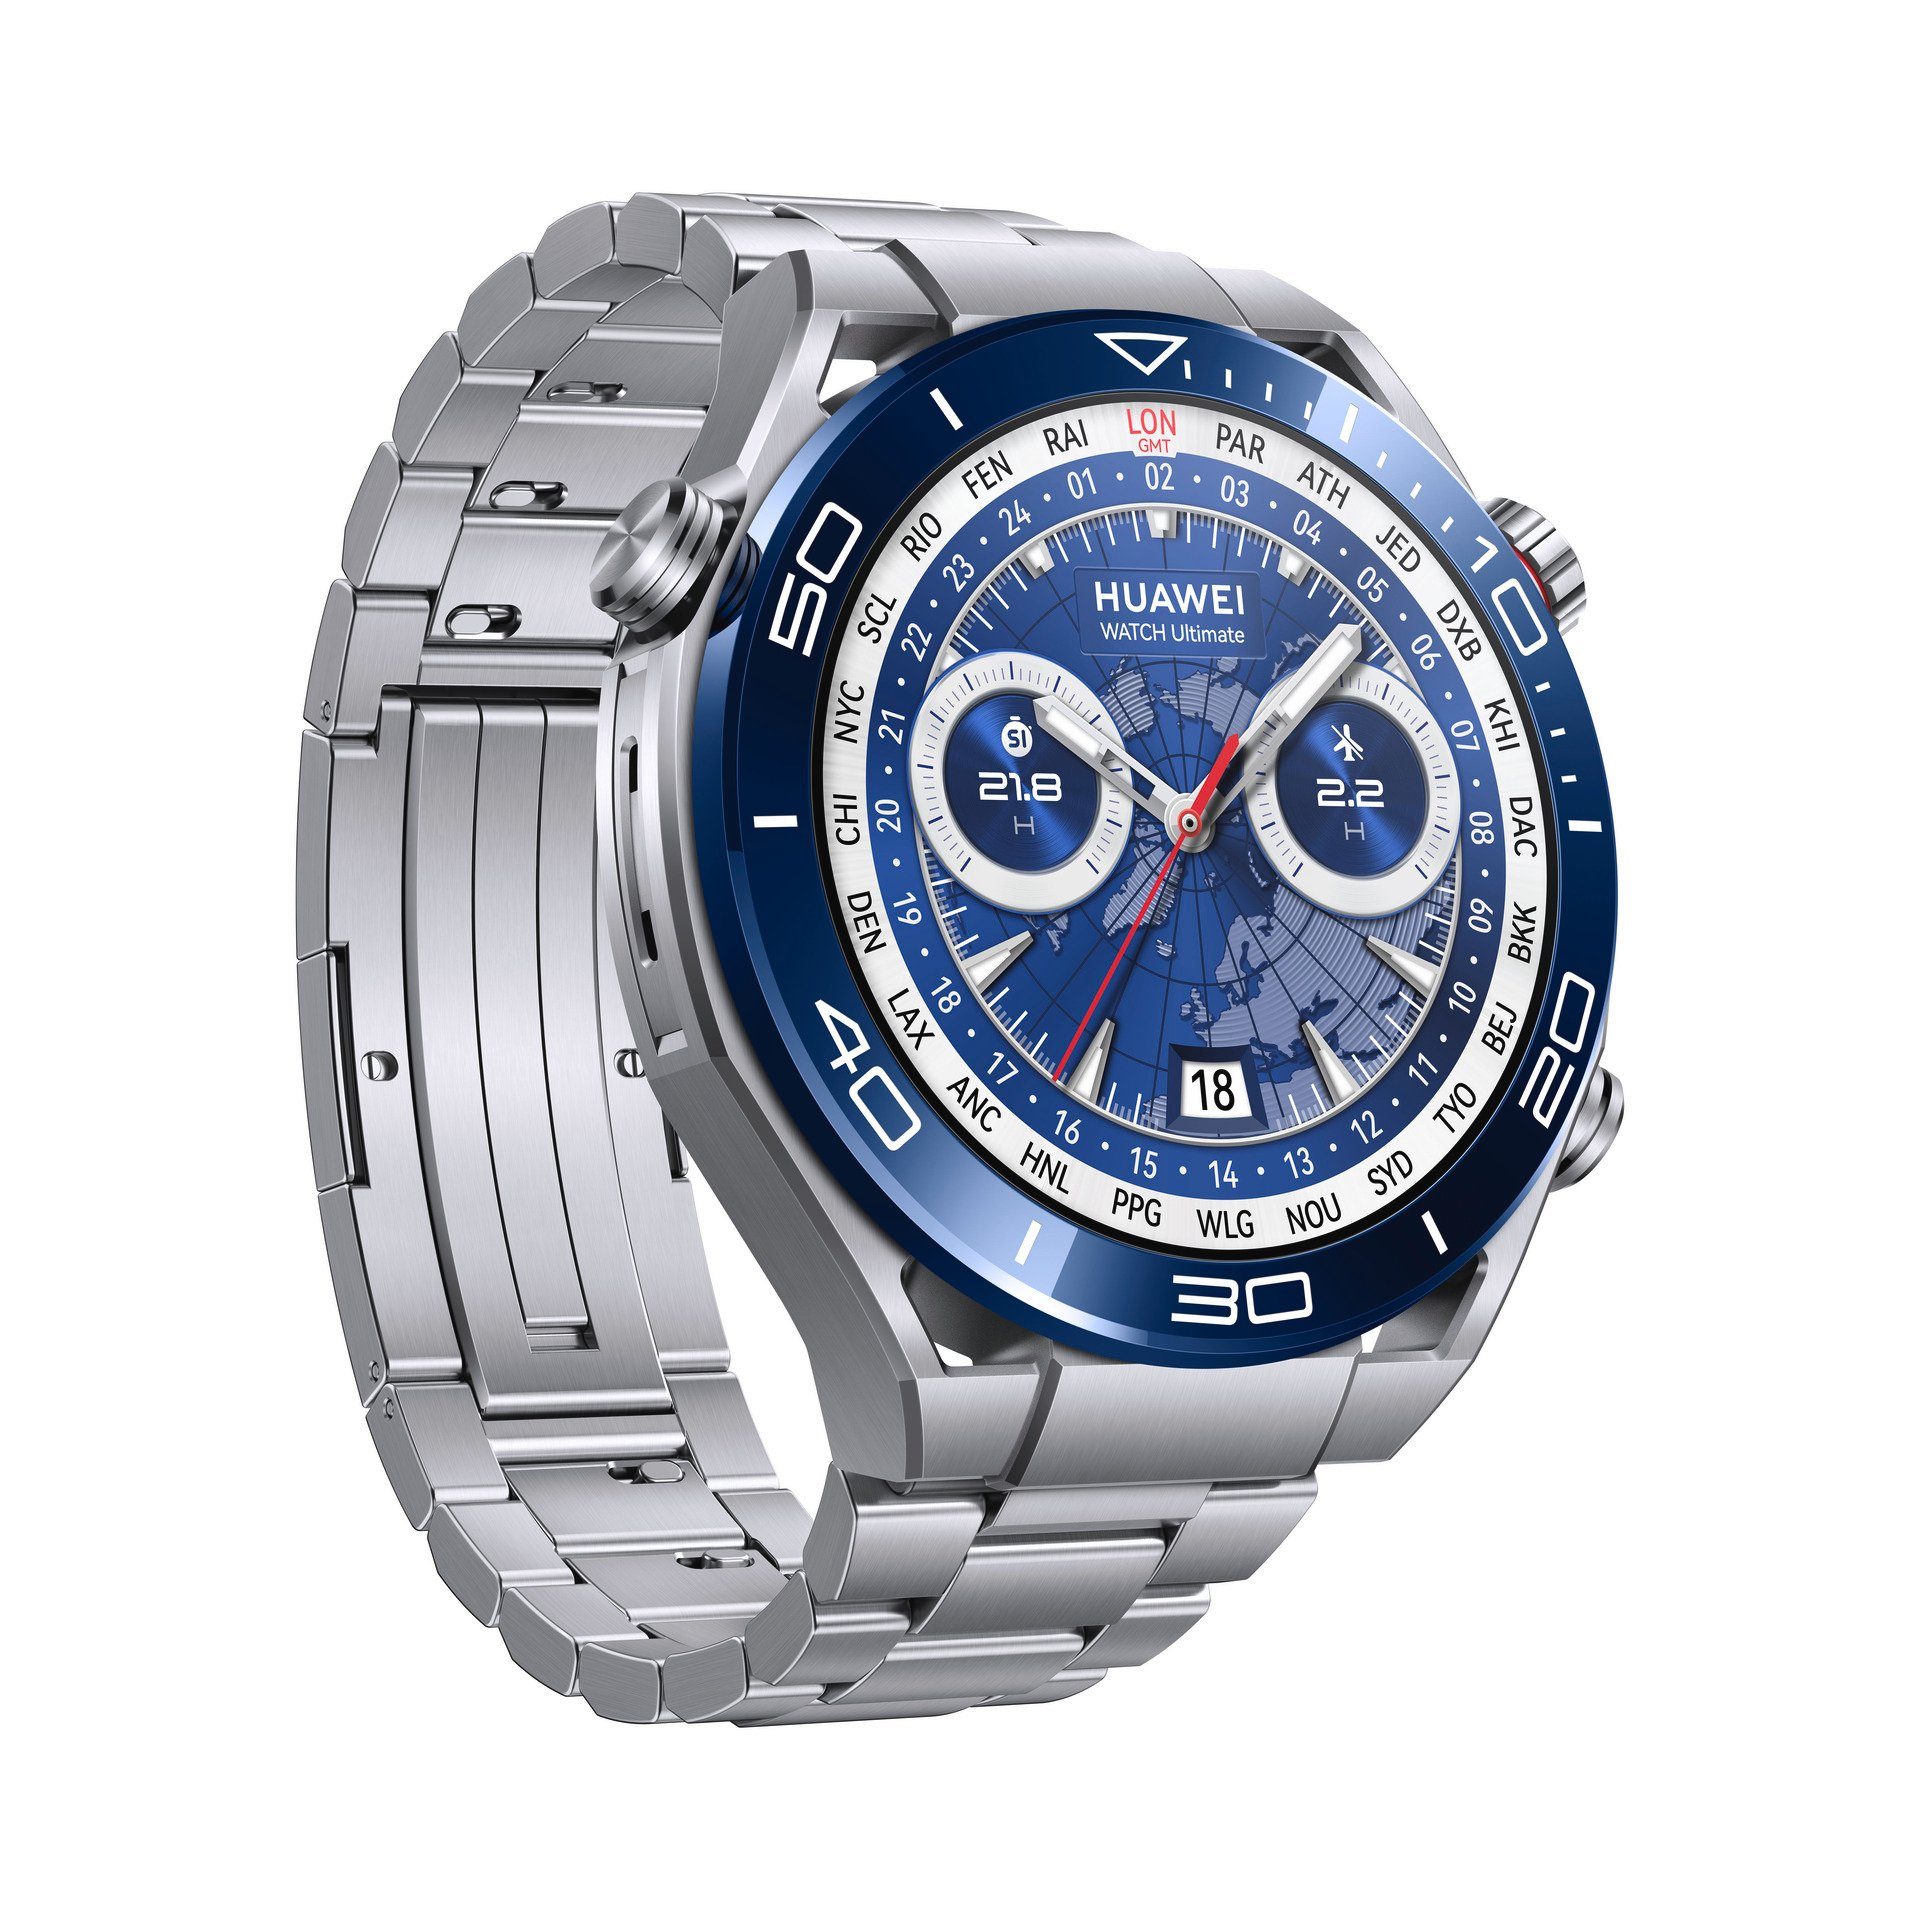 Silber Watch cm/1,5 Proprietär) Huawei Smartwatch Ultimate (3,81 Zoll, Silber |